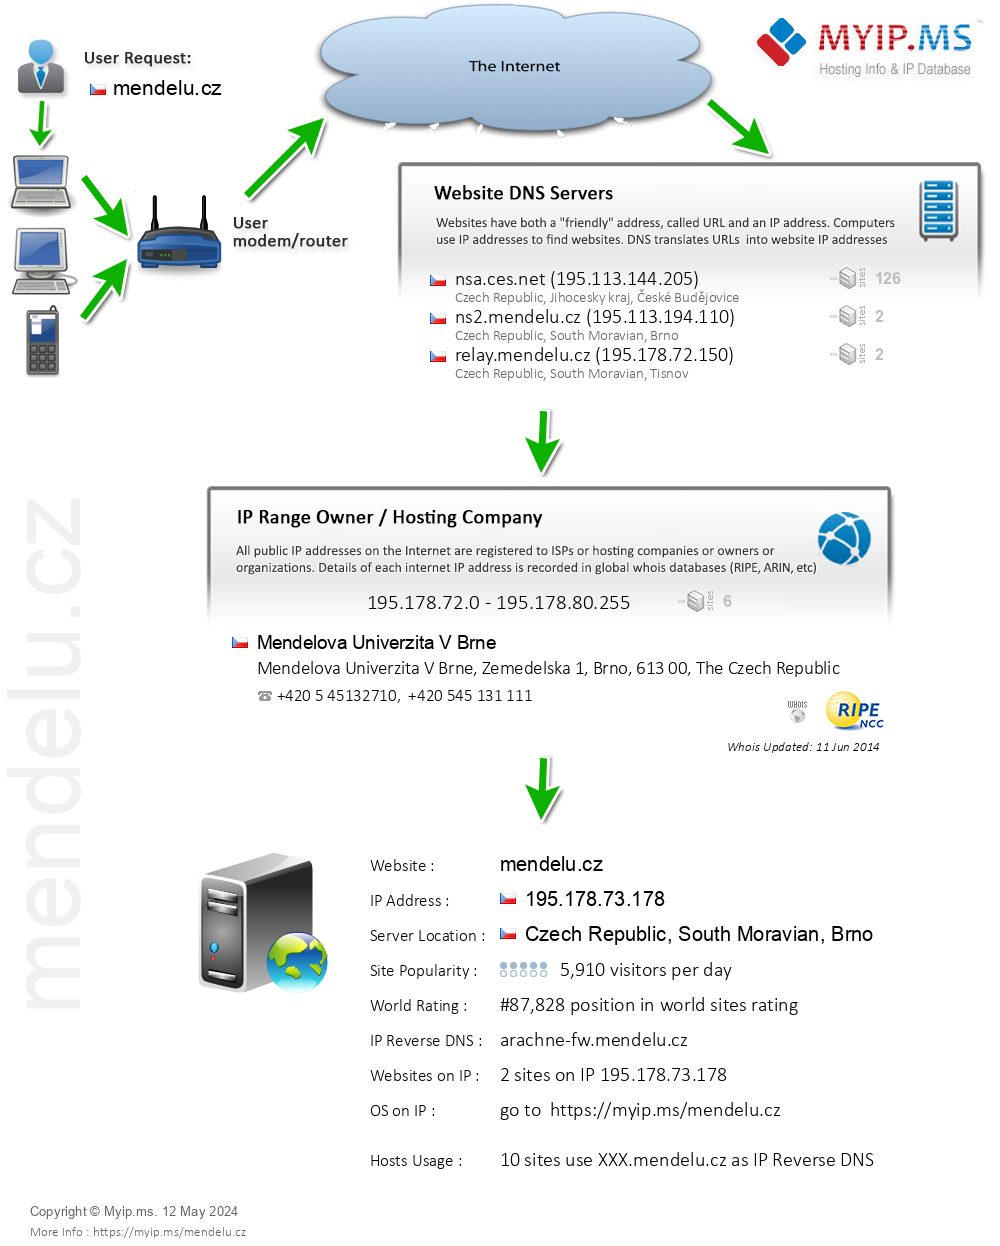 Mendelu.cz - Website Hosting Visual IP Diagram